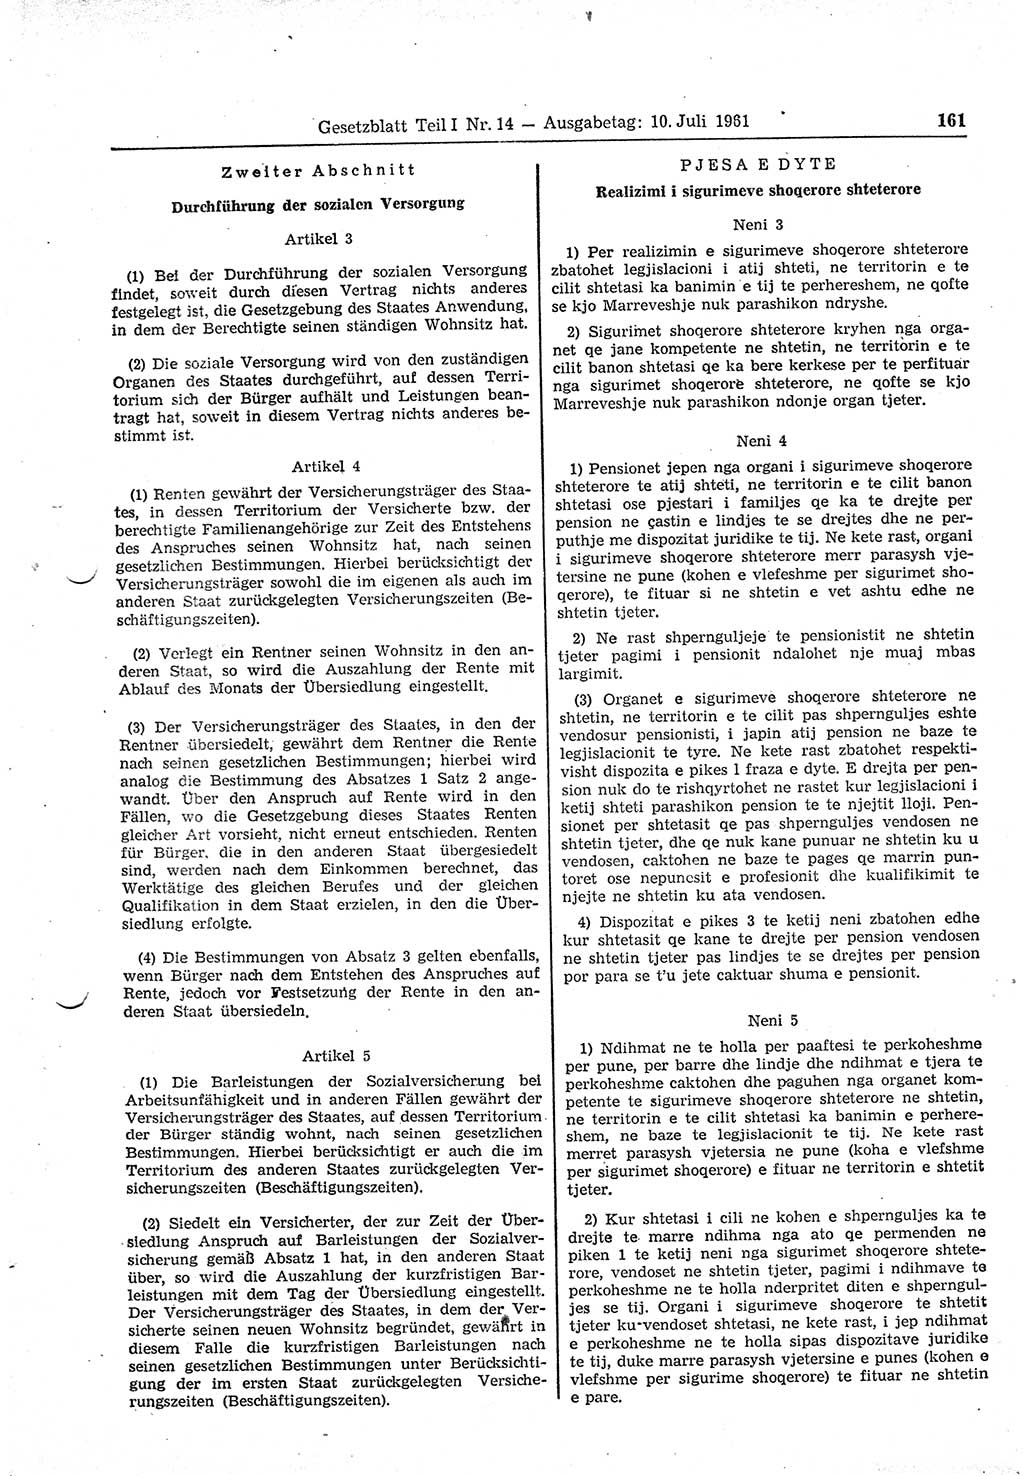 Gesetzblatt (GBl.) der Deutschen Demokratischen Republik (DDR) Teil Ⅰ 1961, Seite 161 (GBl. DDR Ⅰ 1961, S. 161)